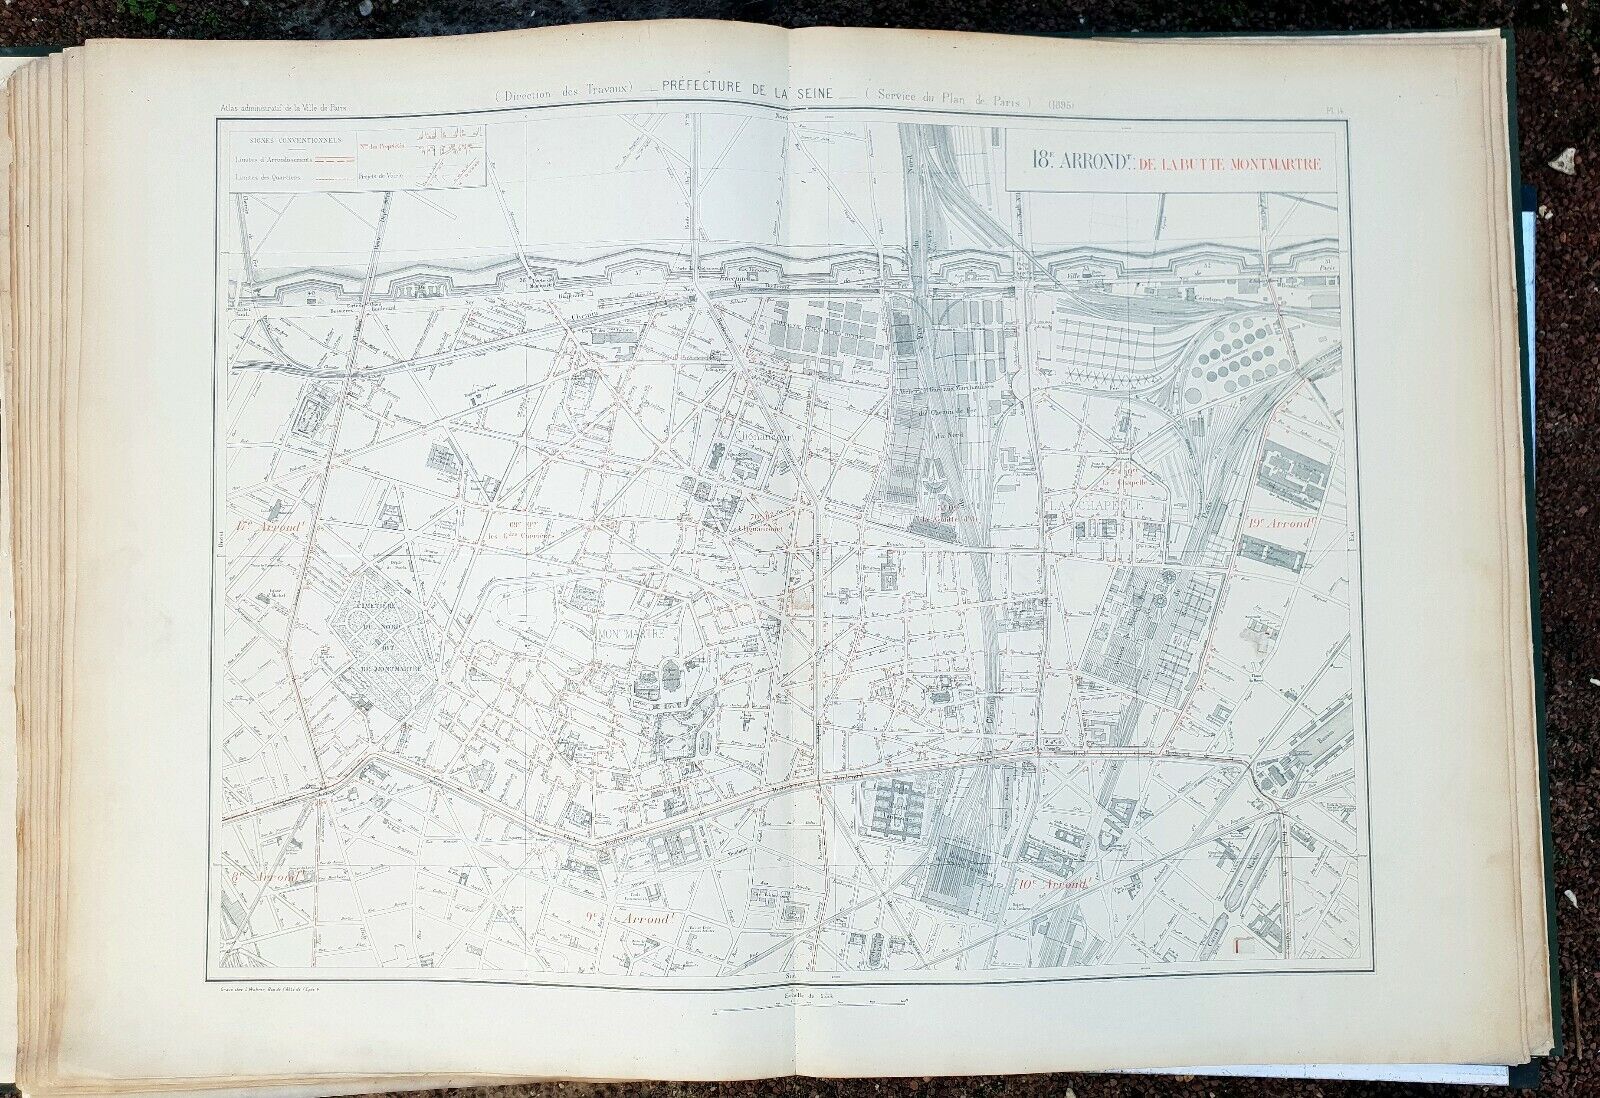 Paris XVIIIth century - Prefect GARBAGE Very rare plan from 1895 to 1/5000 (67 x 94 cm)